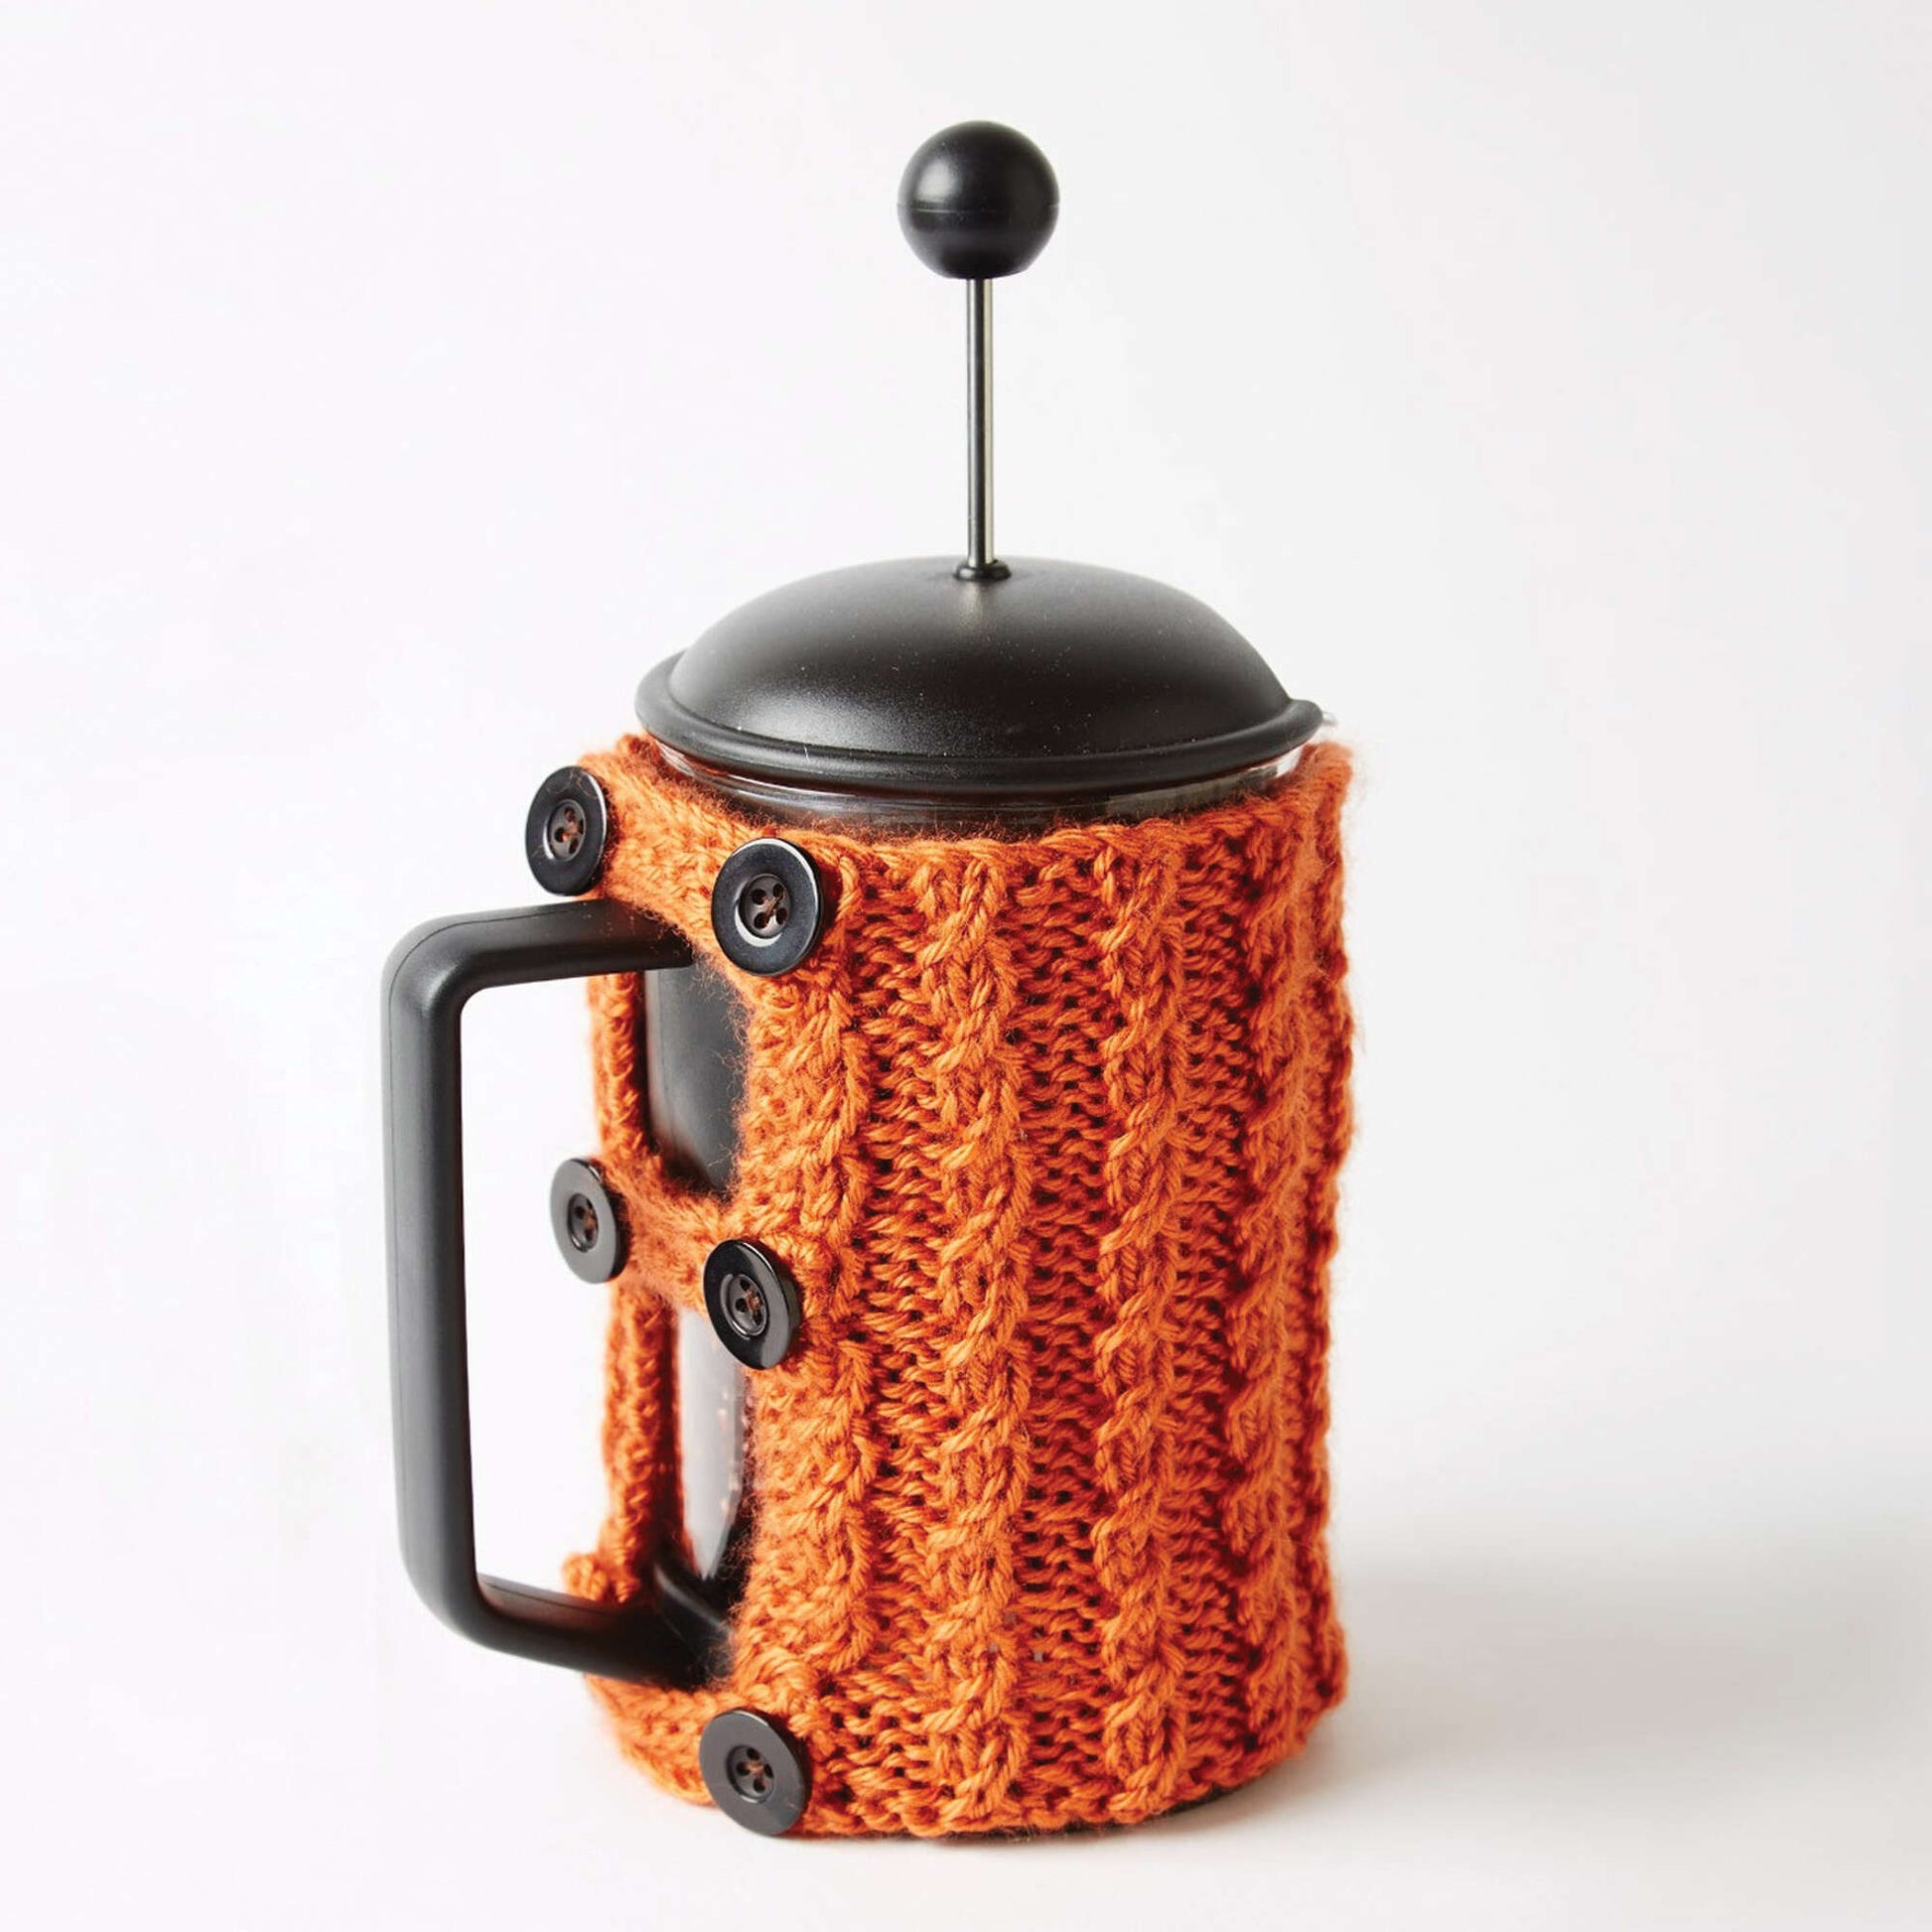 Free Caron Coffee Press And Mug Cozies Knit Pattern